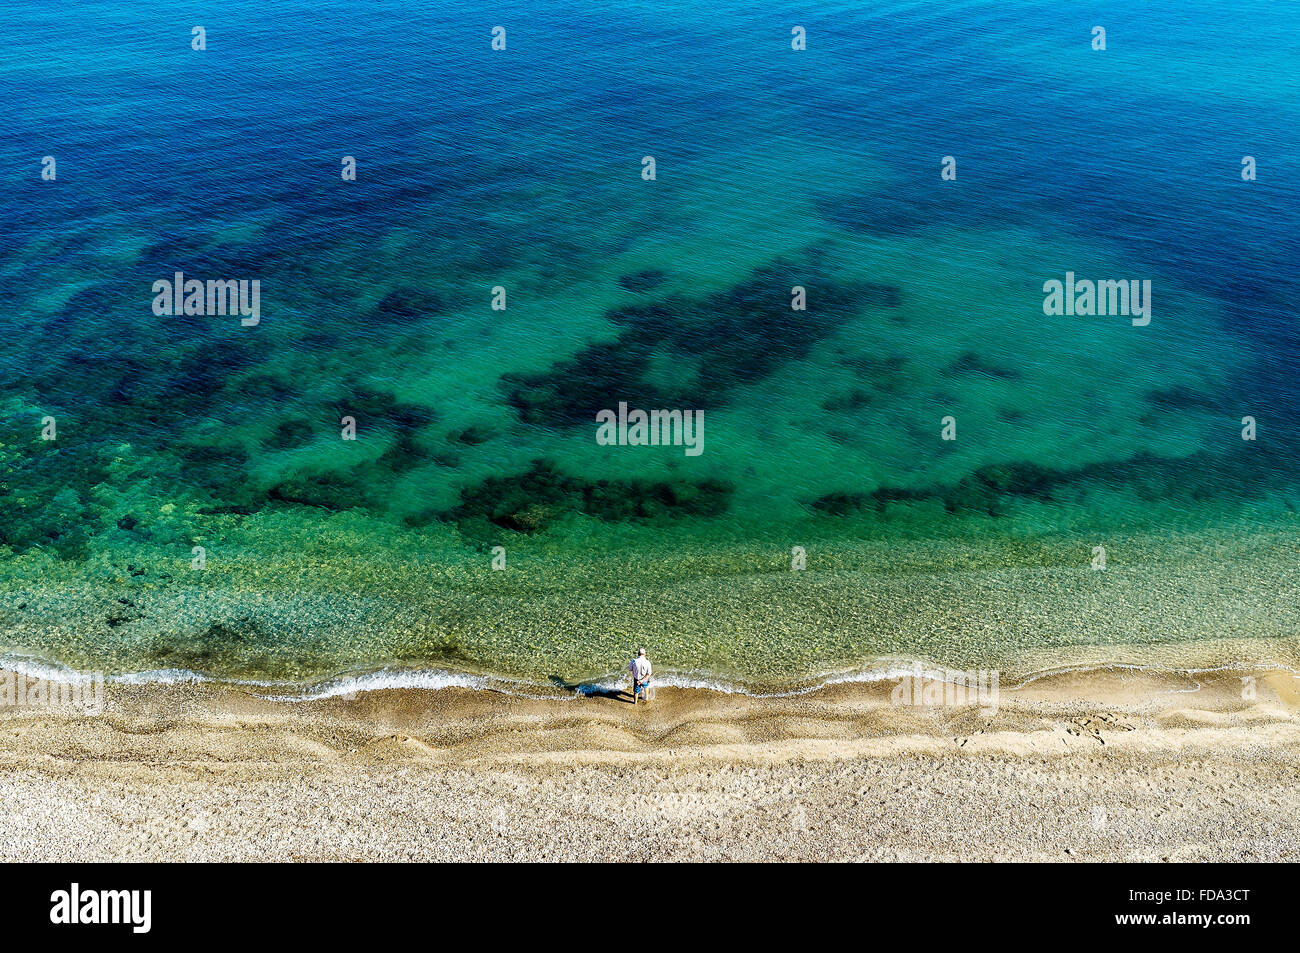 Homme debout seule sur une plage au bord de l'eau, Sicile, Italie Banque D'Images